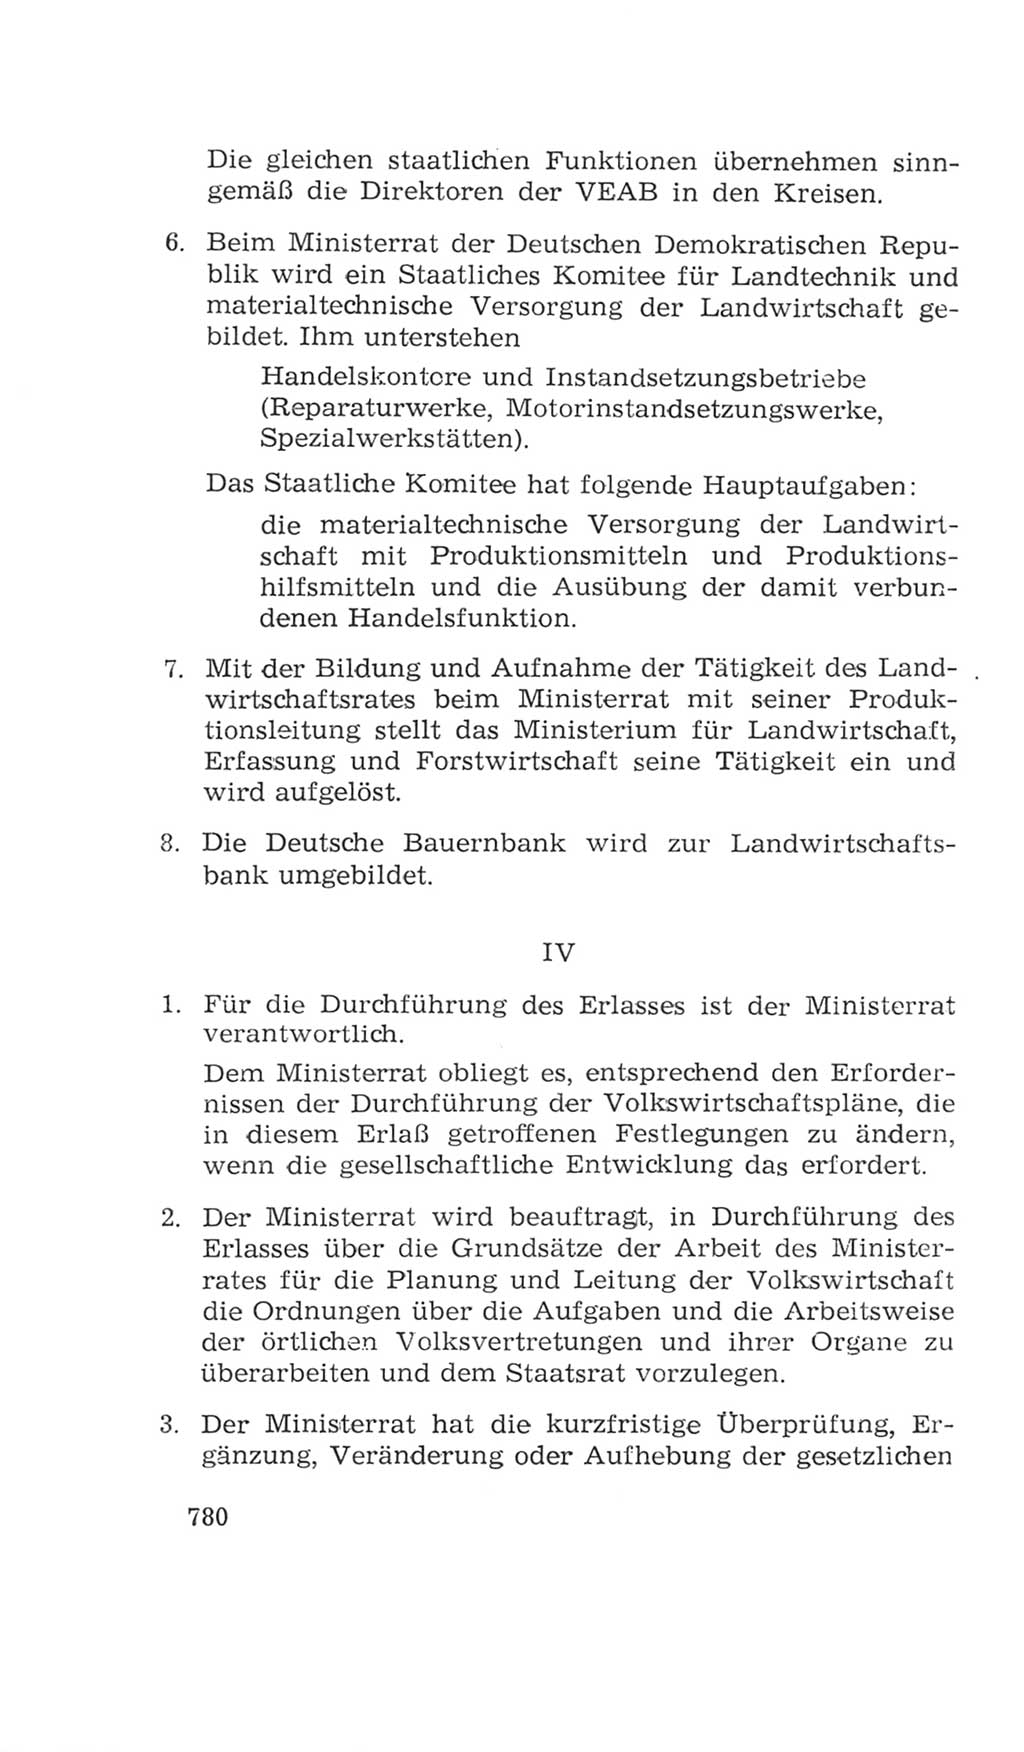 Volkskammer (VK) der Deutschen Demokratischen Republik (DDR), 4. Wahlperiode 1963-1967, Seite 780 (VK. DDR 4. WP. 1963-1967, S. 780)